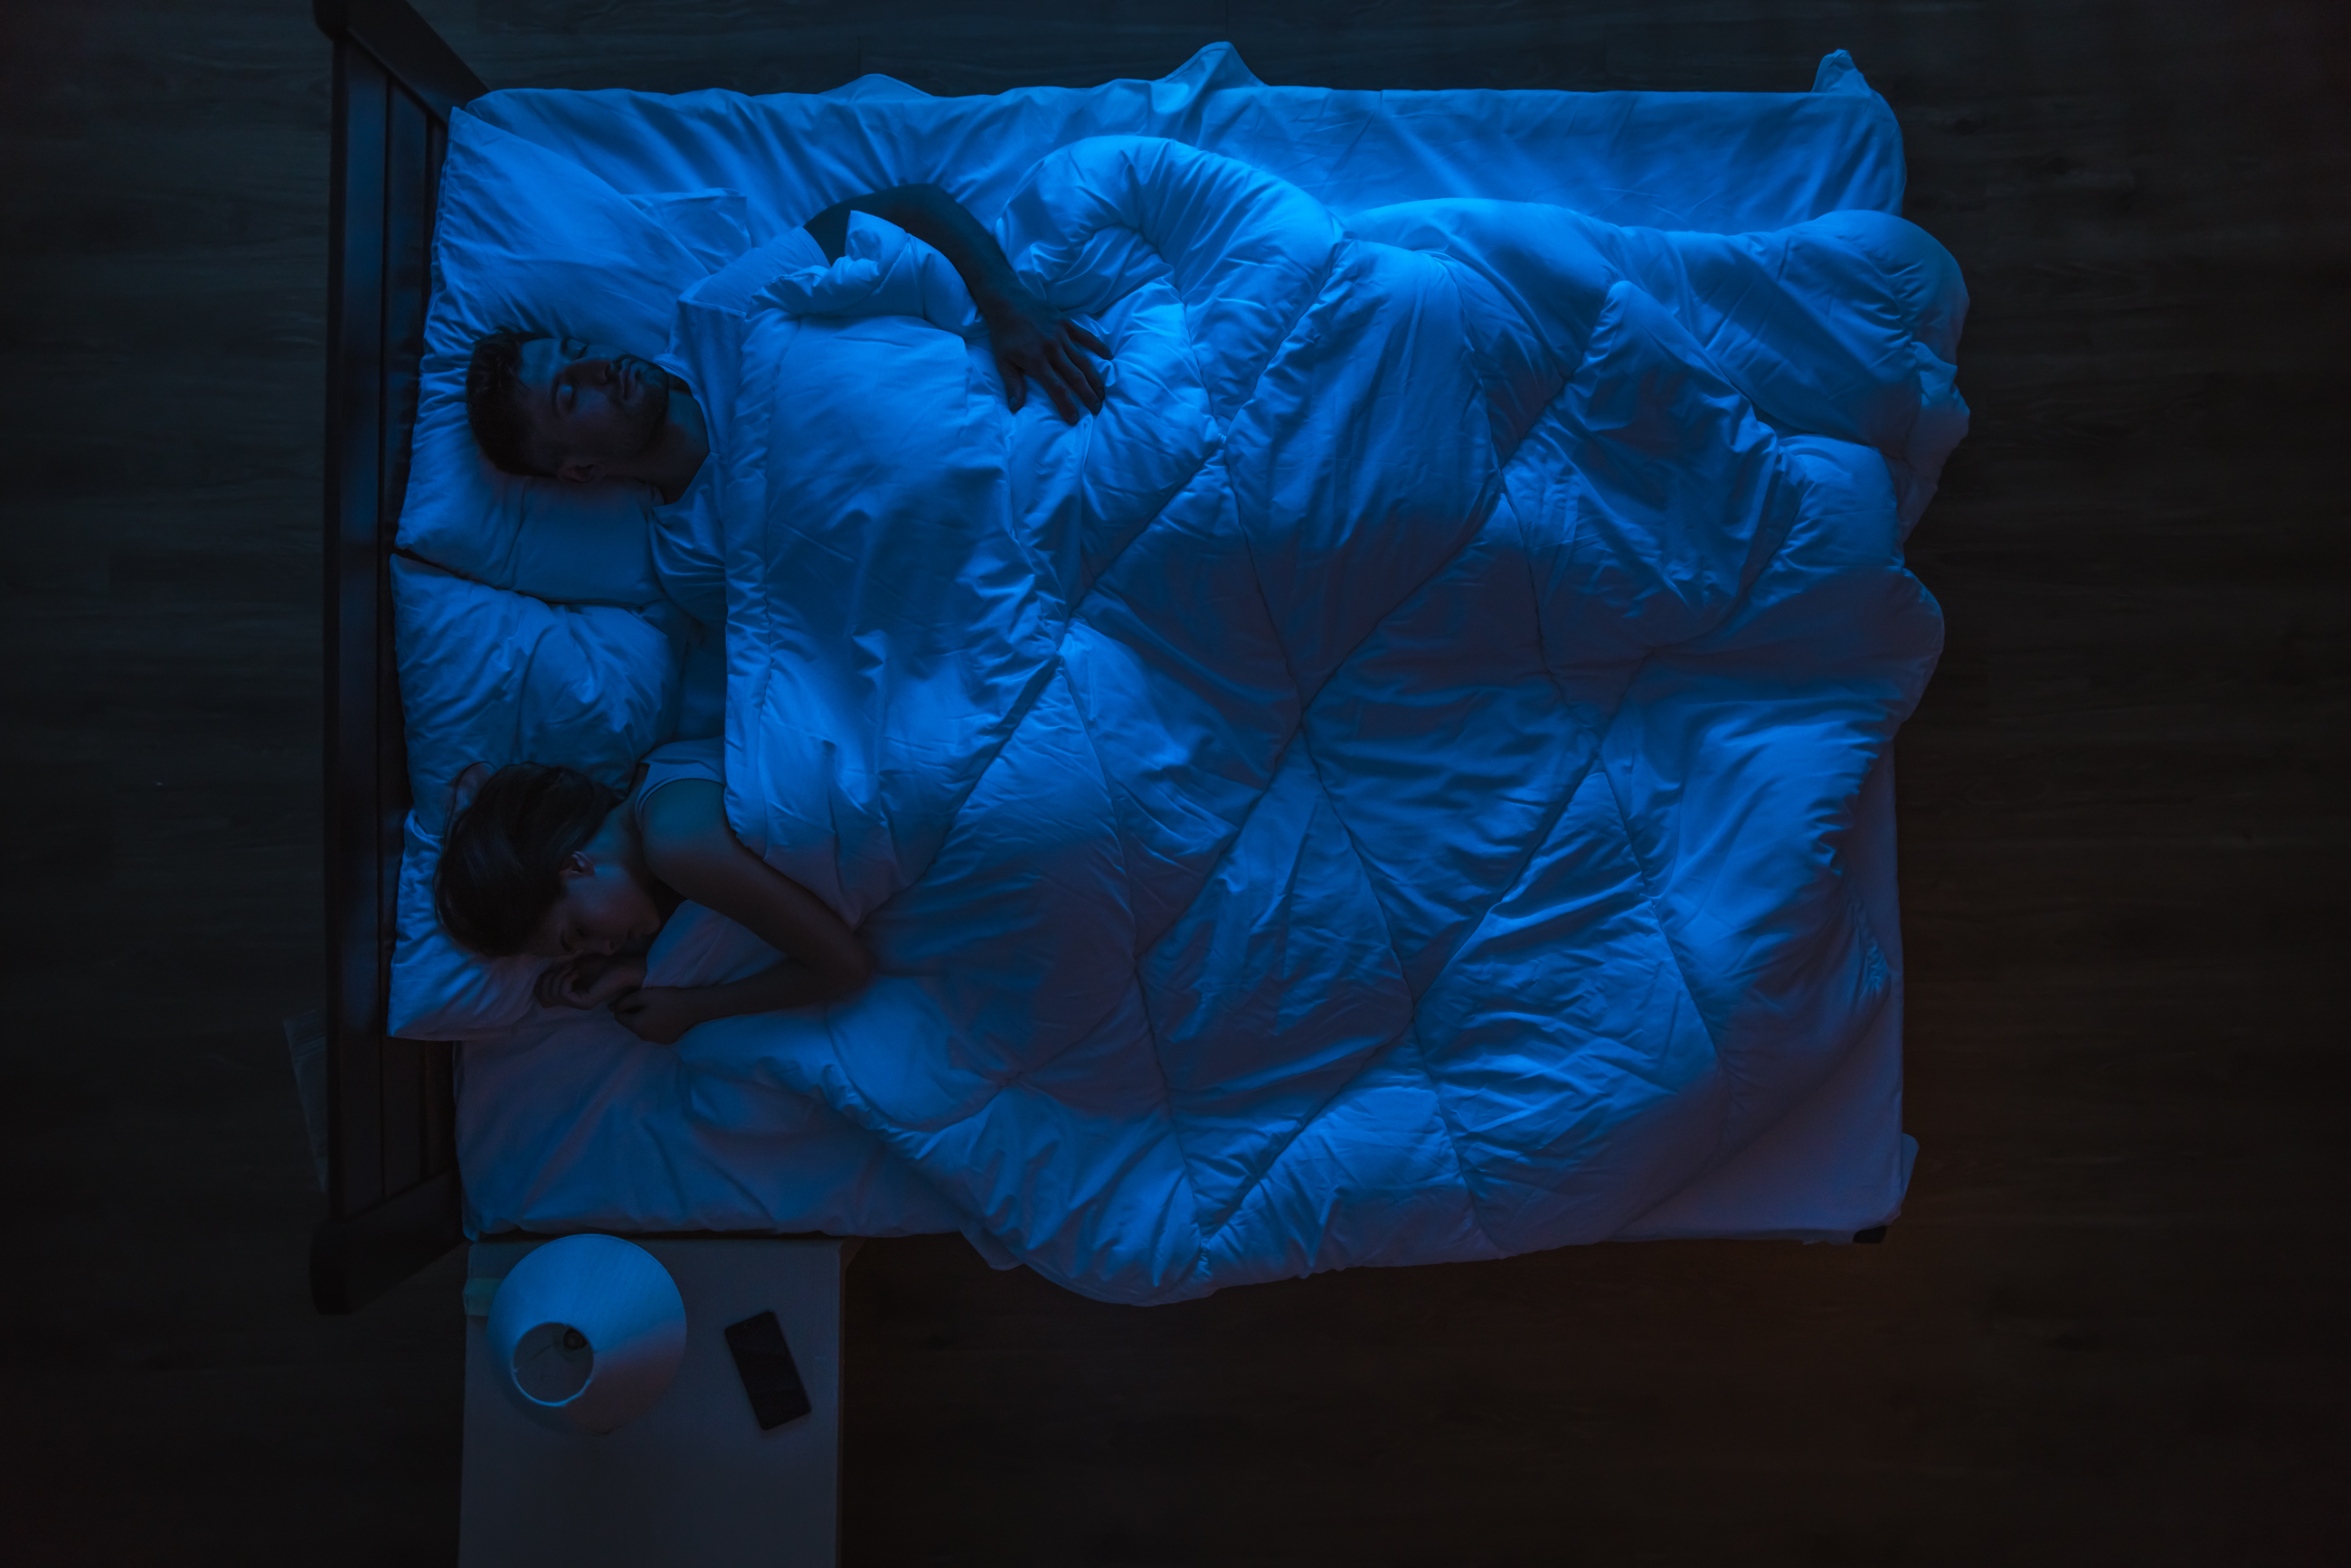 Das Paar schläft auf einem Bett | Quelle: Shutterstock